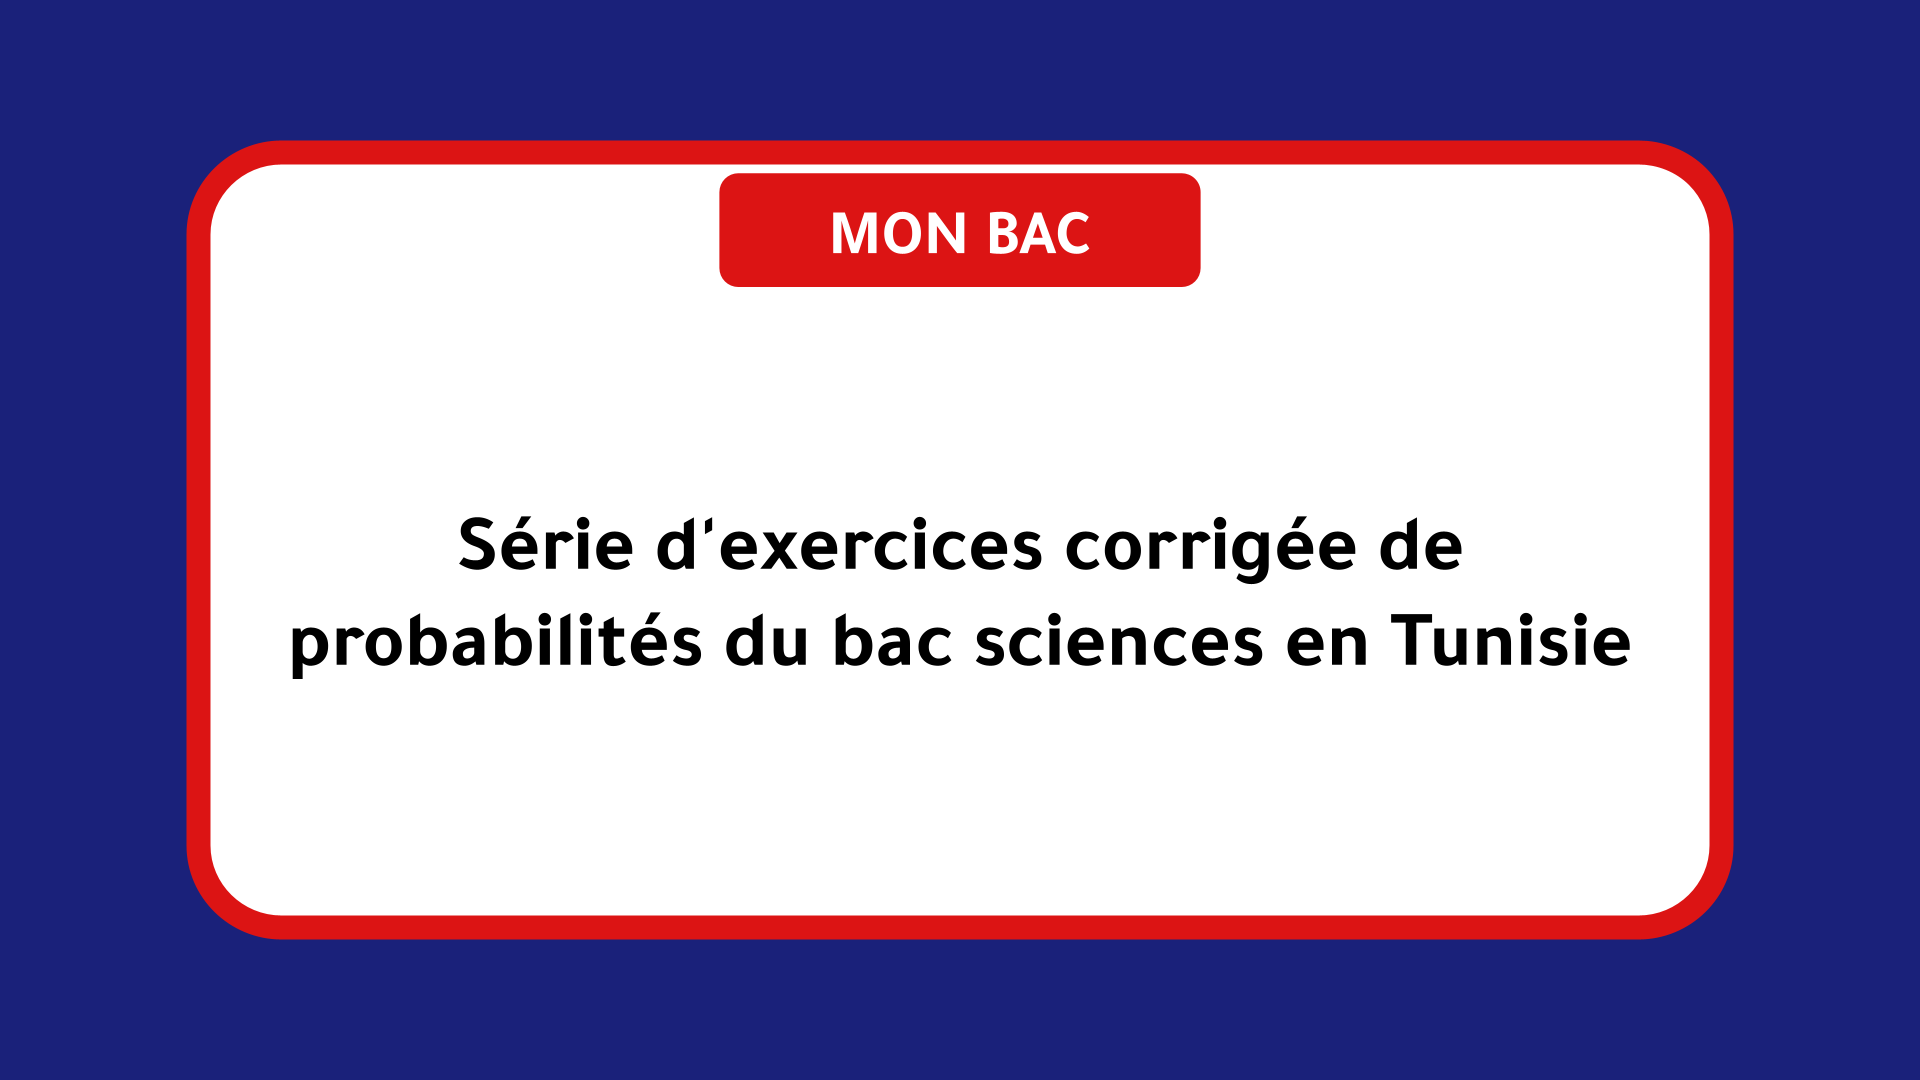 Série d'exercices corrigée de probabilités bac sciences Tunisie